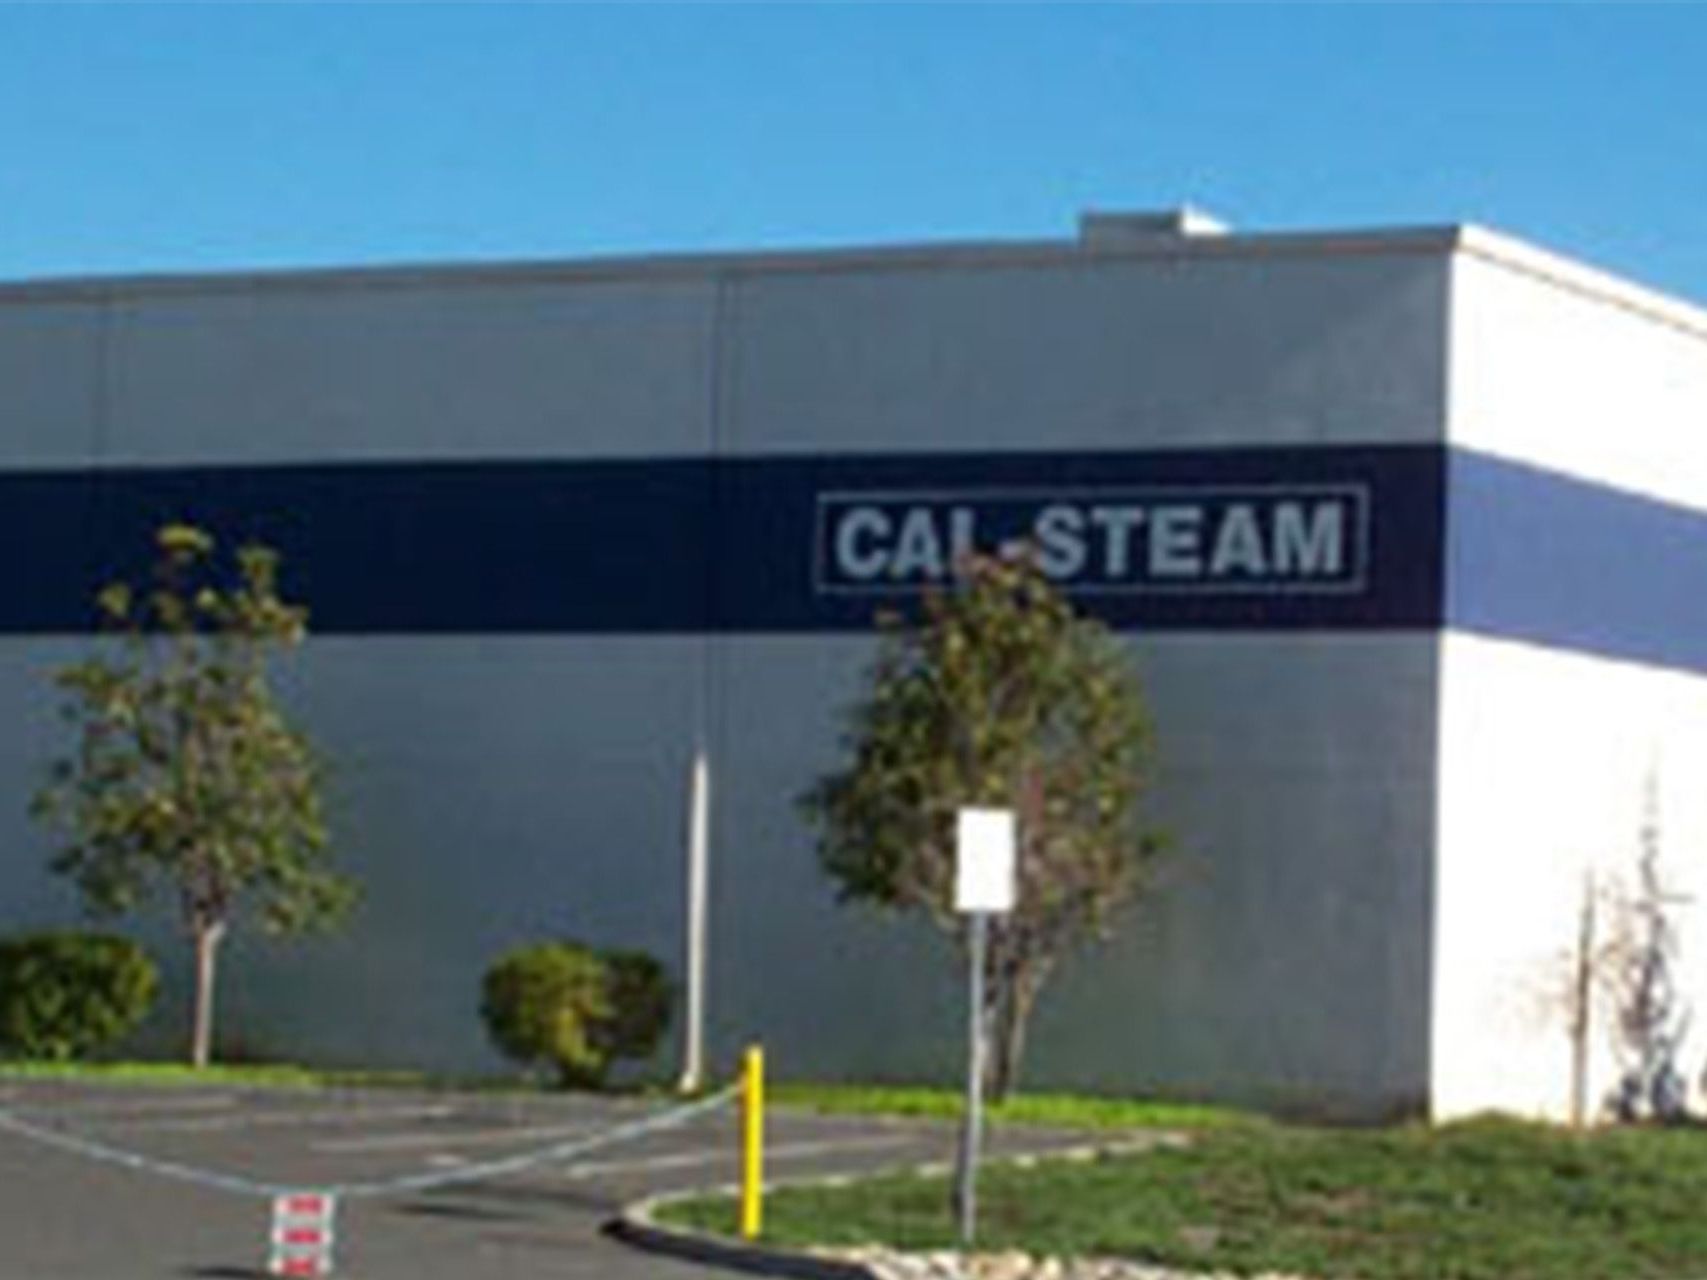 Cal-Steam